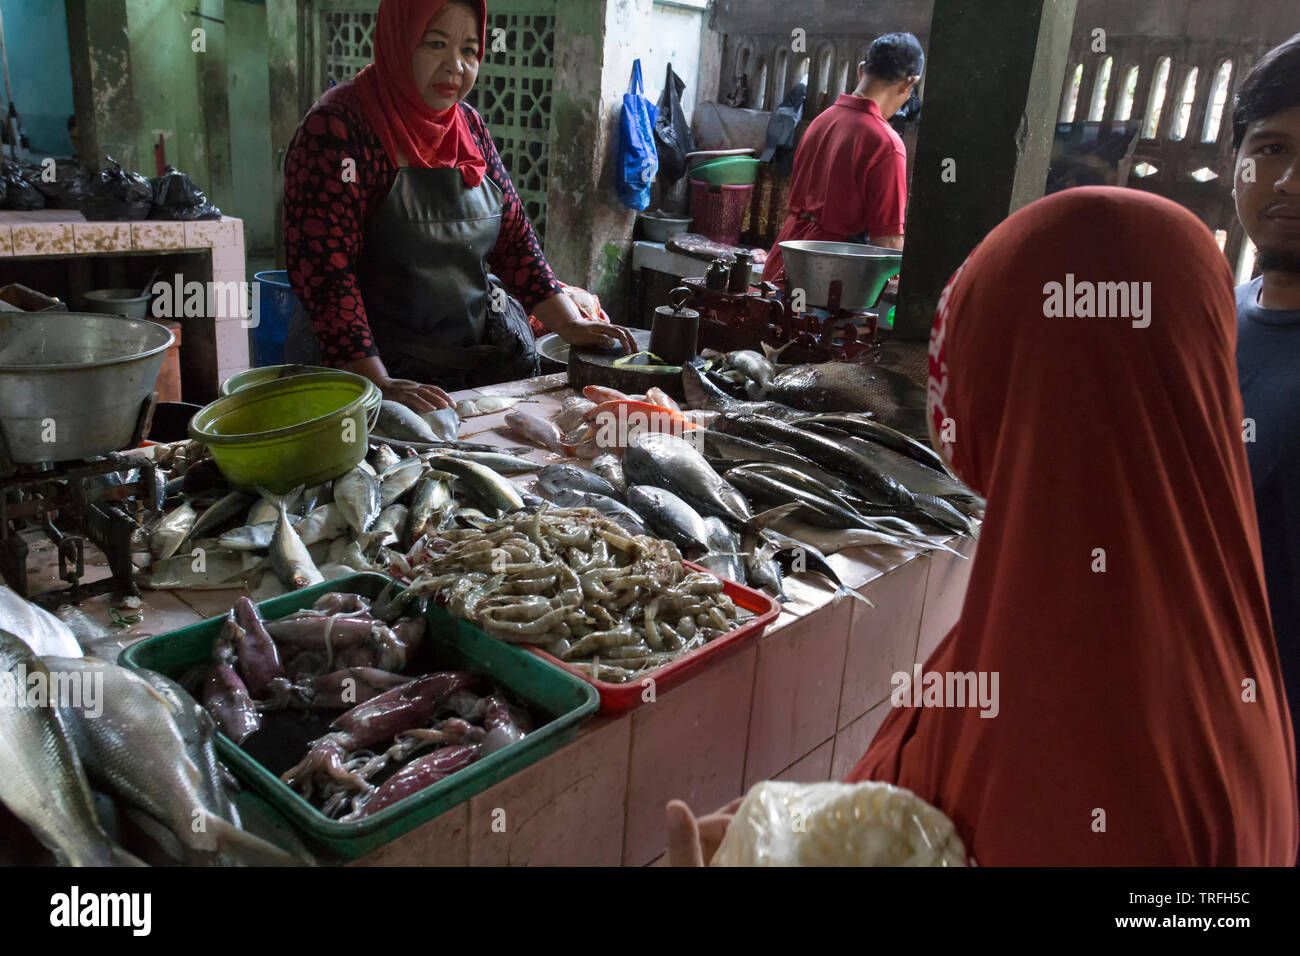 Yogyacarta, Indonesia - Agosto 04, 2017: el marisco en el mercado de pescado; la mujer no identificada es la venta de pescado fresco Foto de stock